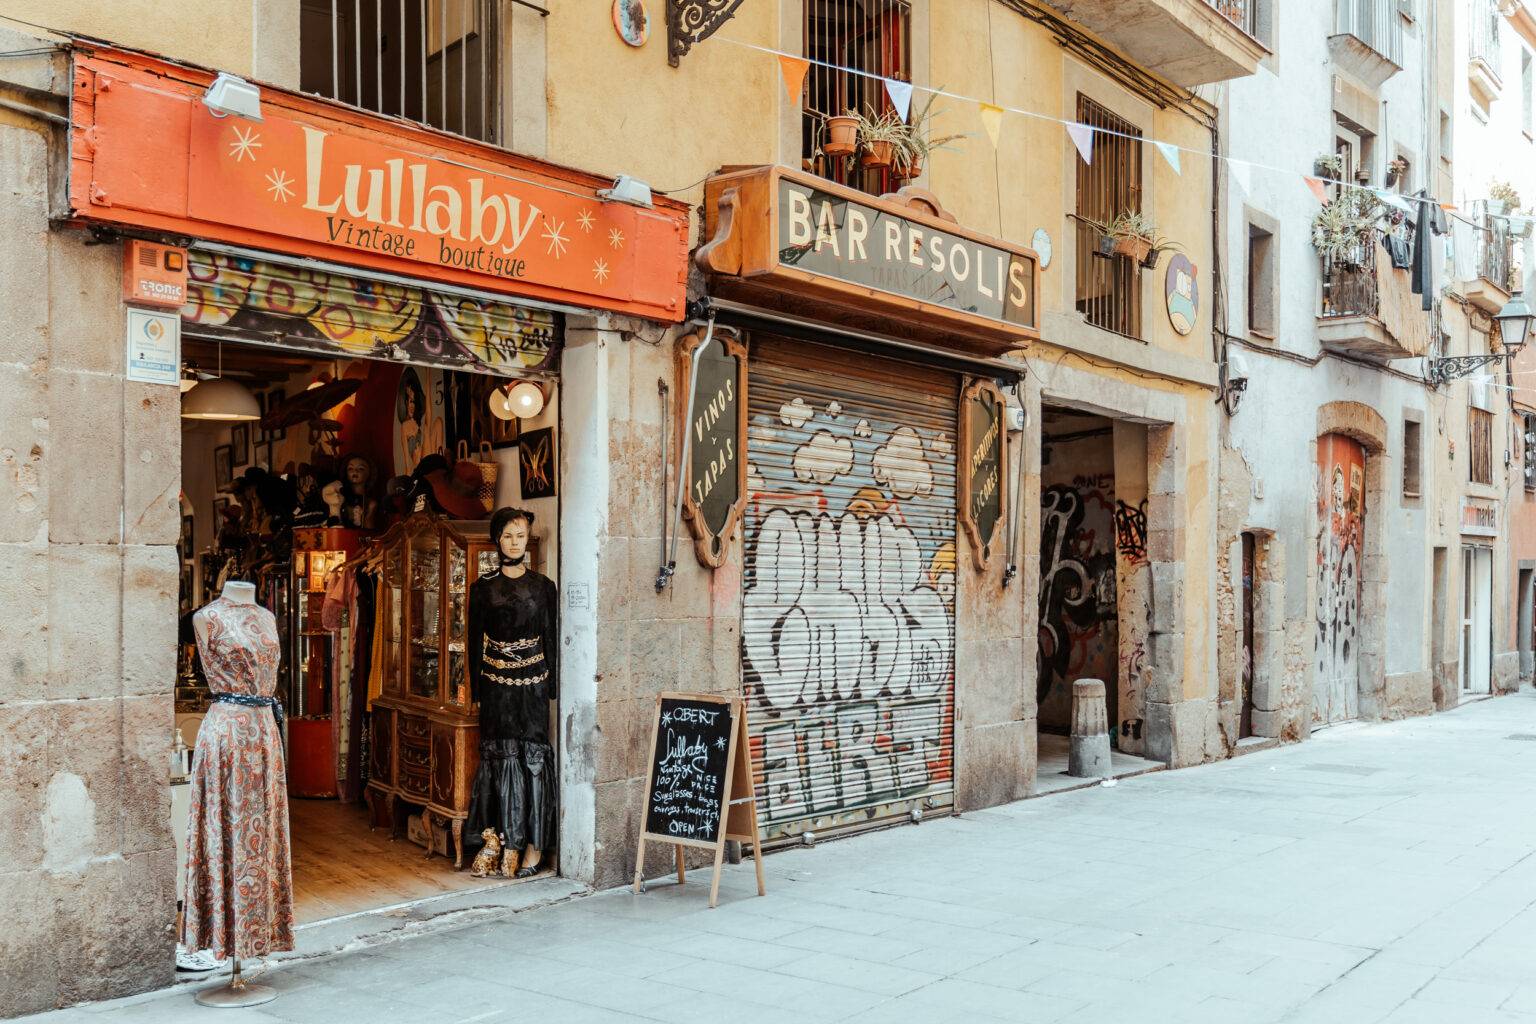 Wer Secondhand und Vintage liebt, ist im Carrer de la Riera Baixa genau richtig.